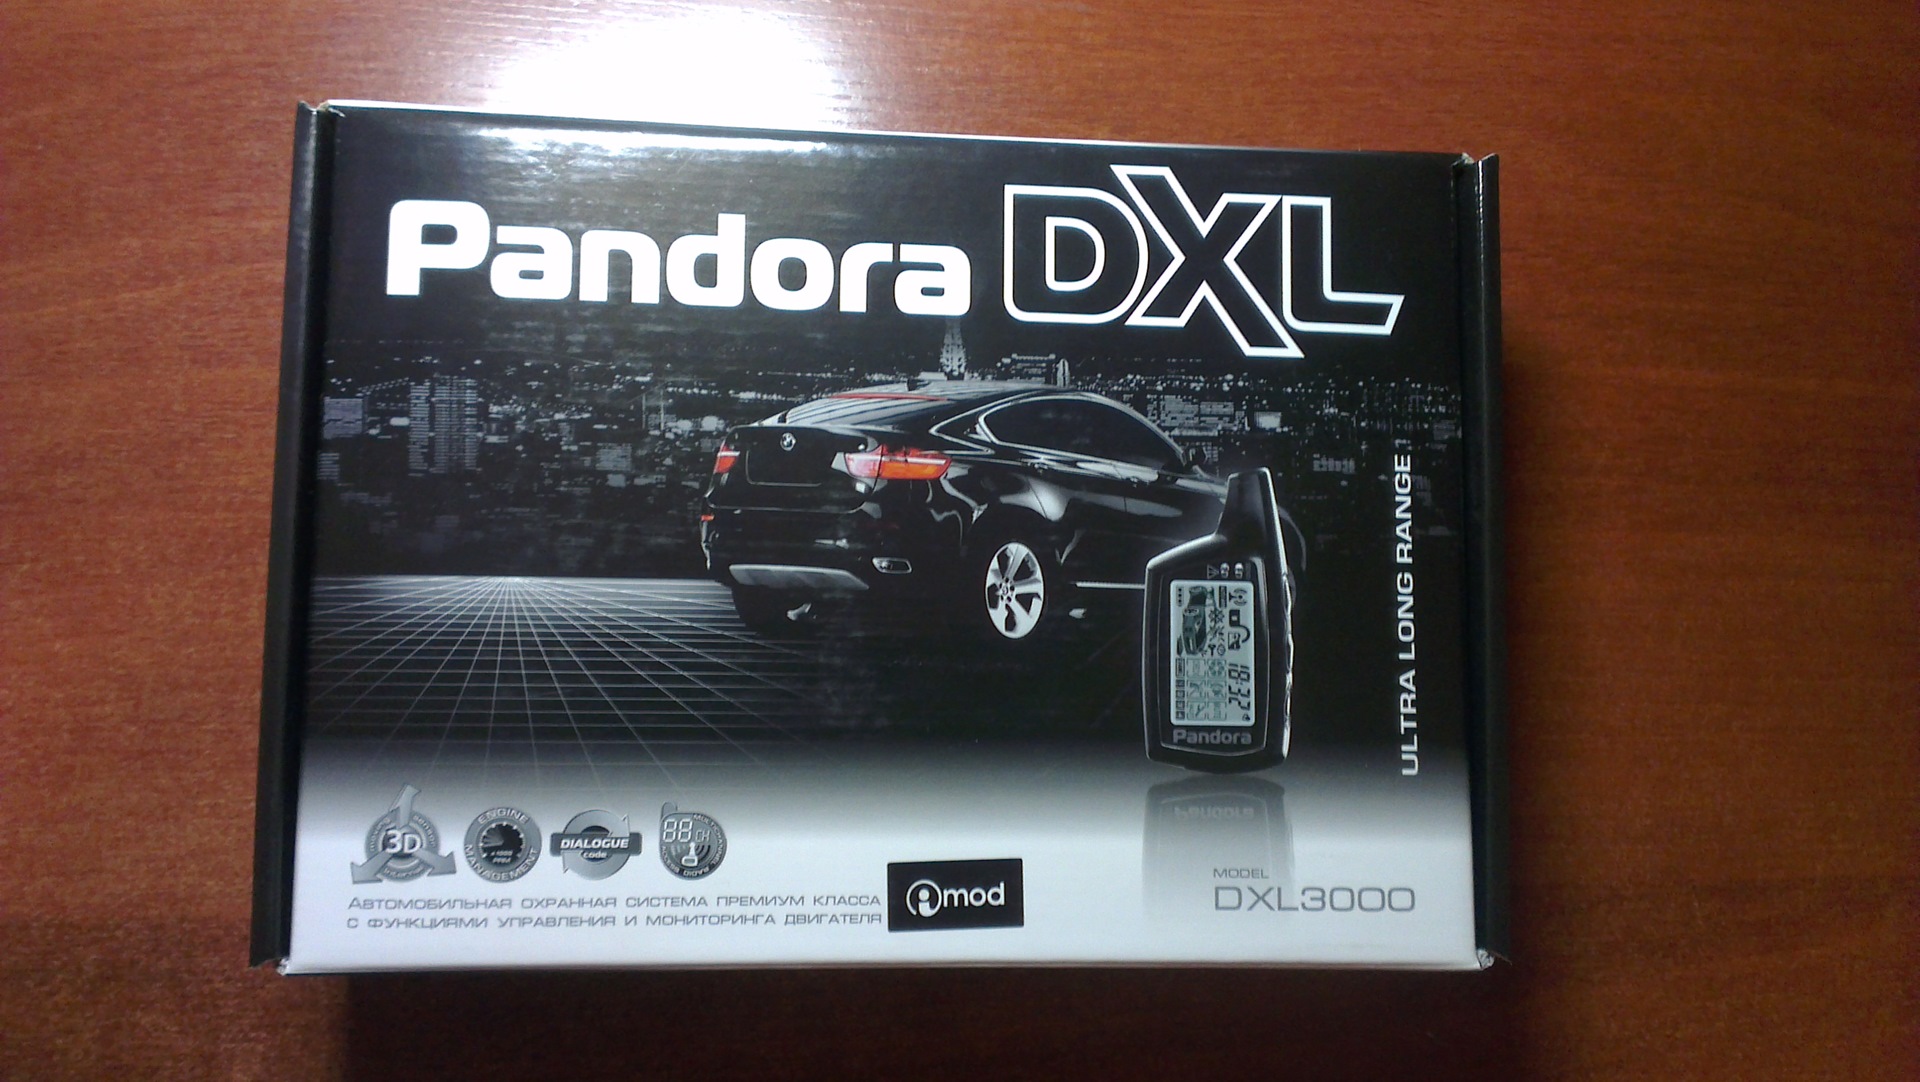 Pandora dxl 3000. Автосигнализация pandora DXL 3000. Pandora DXL 3000i Mod. Брелок pandora DXL 5000. Pandora DXL 073.